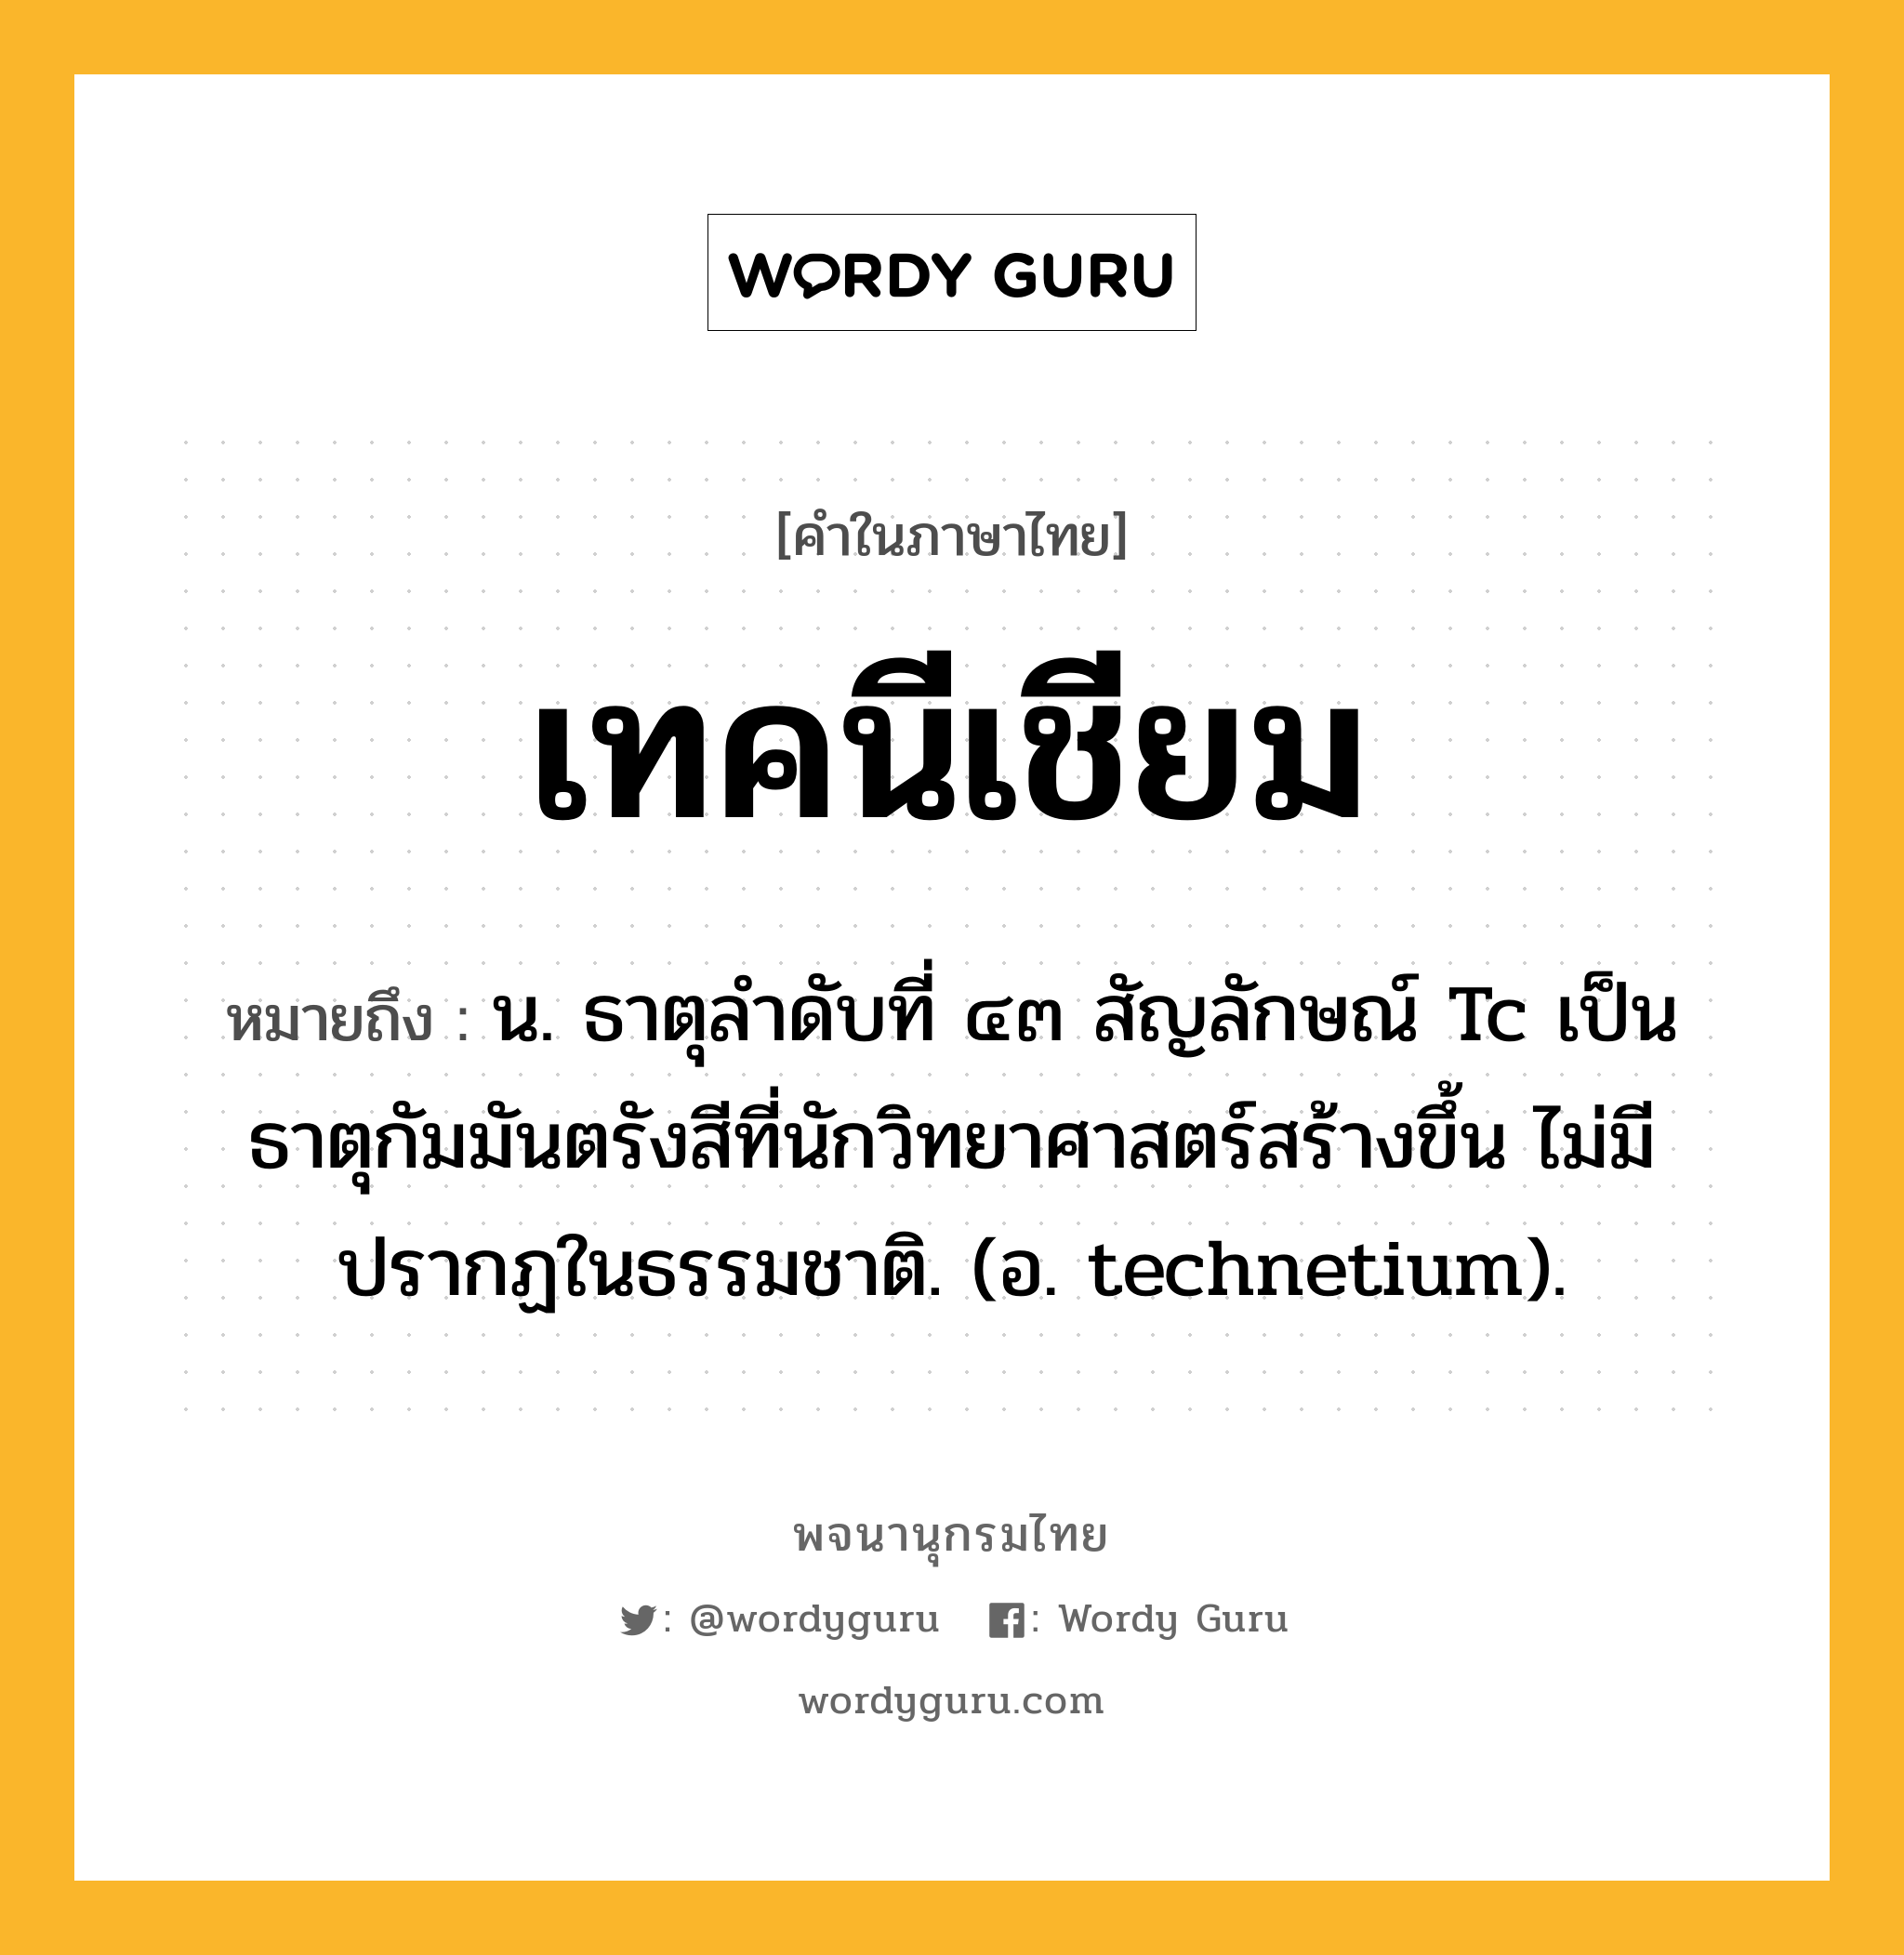 เทคนีเชียม หมายถึงอะไร?, คำในภาษาไทย เทคนีเชียม หมายถึง น. ธาตุลําดับที่ ๔๓ สัญลักษณ์ Tc เป็นธาตุกัมมันตรังสีที่นักวิทยาศาสตร์สร้างขึ้น ไม่มีปรากฏในธรรมชาติ. (อ. technetium).